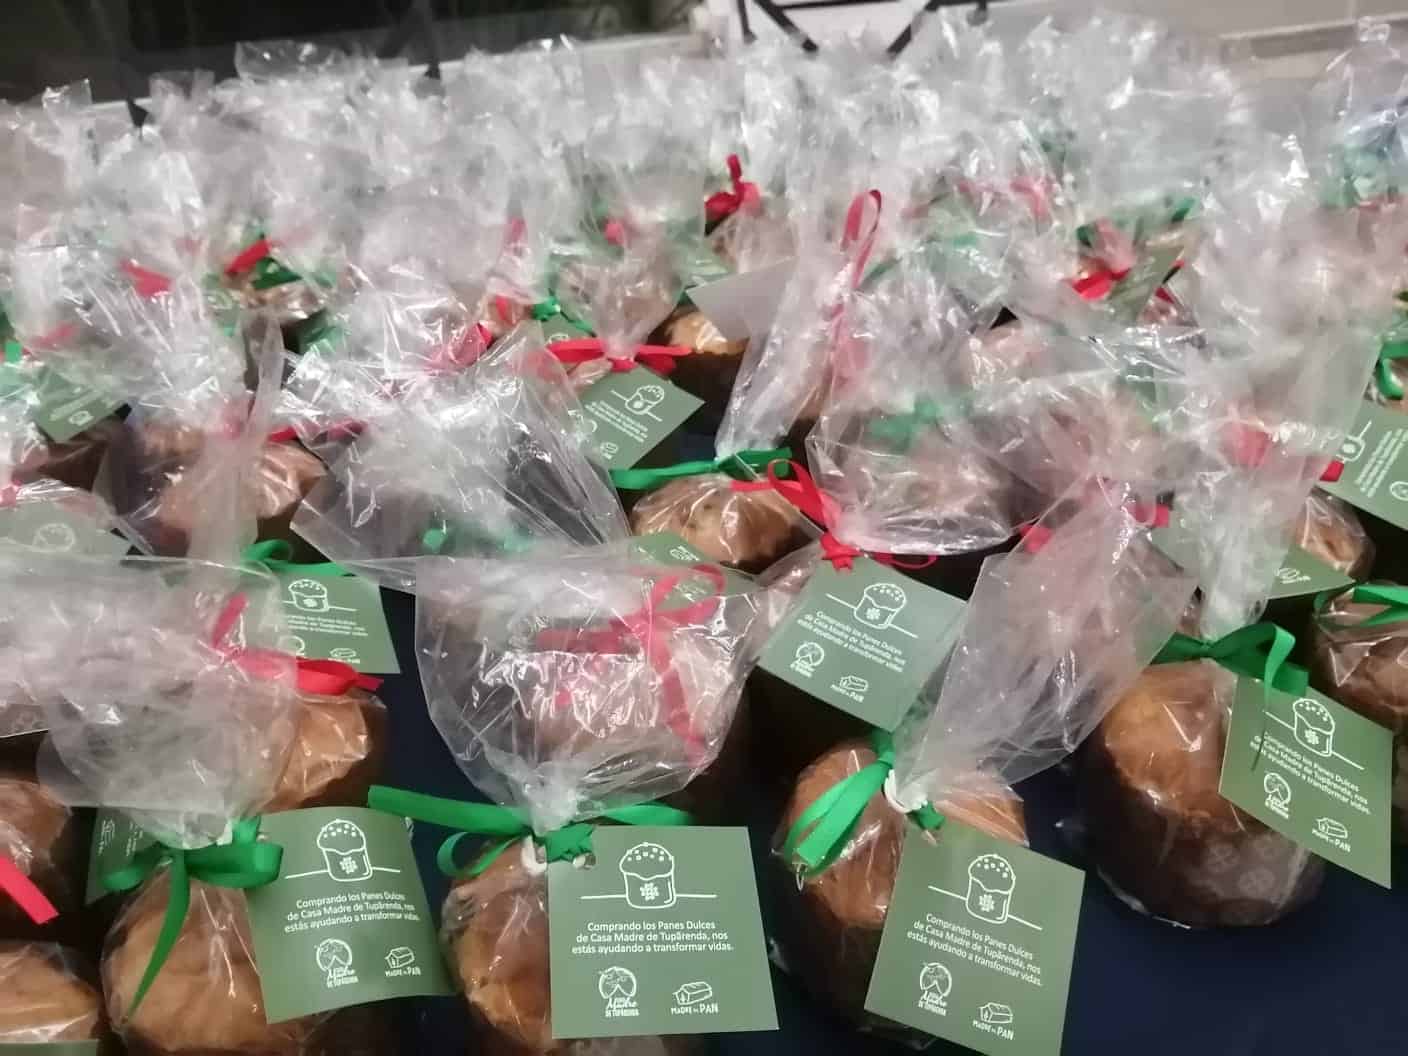 Souvenir: minis pan dulces haciendo progaganda para aue hagan sus pedidos para las fiestas